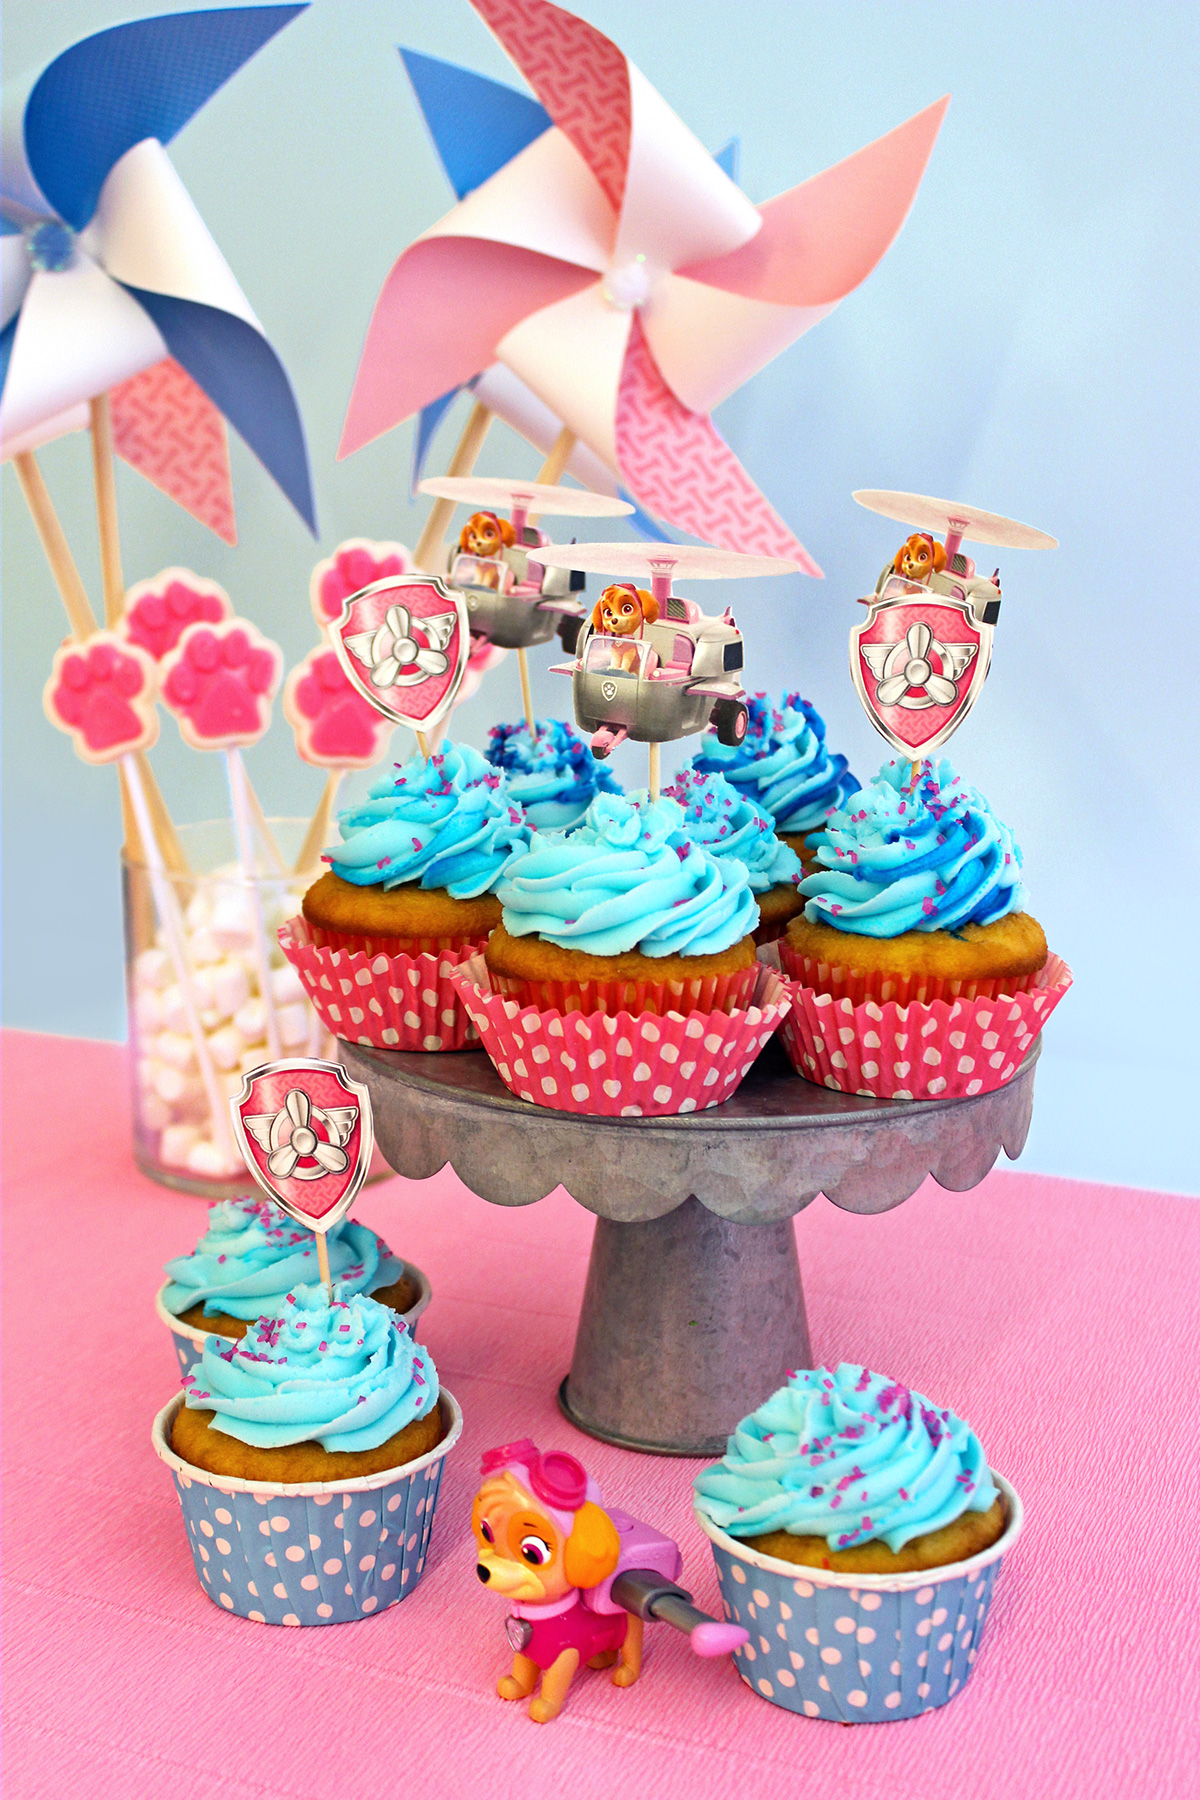 PAW Patrol Skye Birthday Party Cupcakes